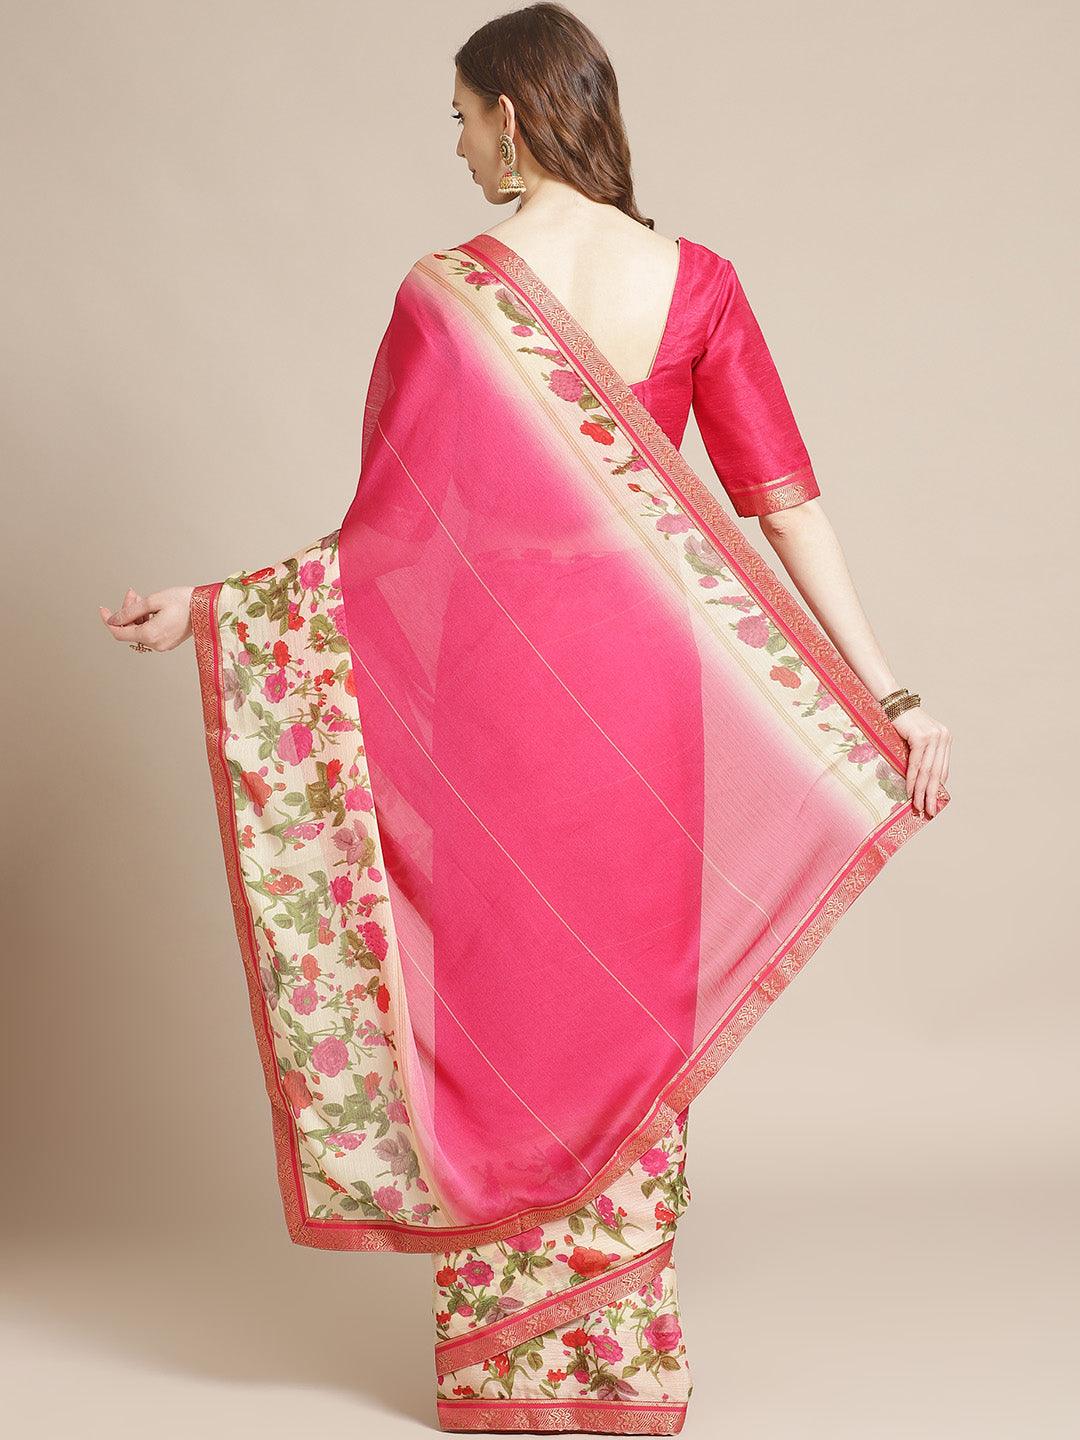 Pink Printed Chiffon Saree